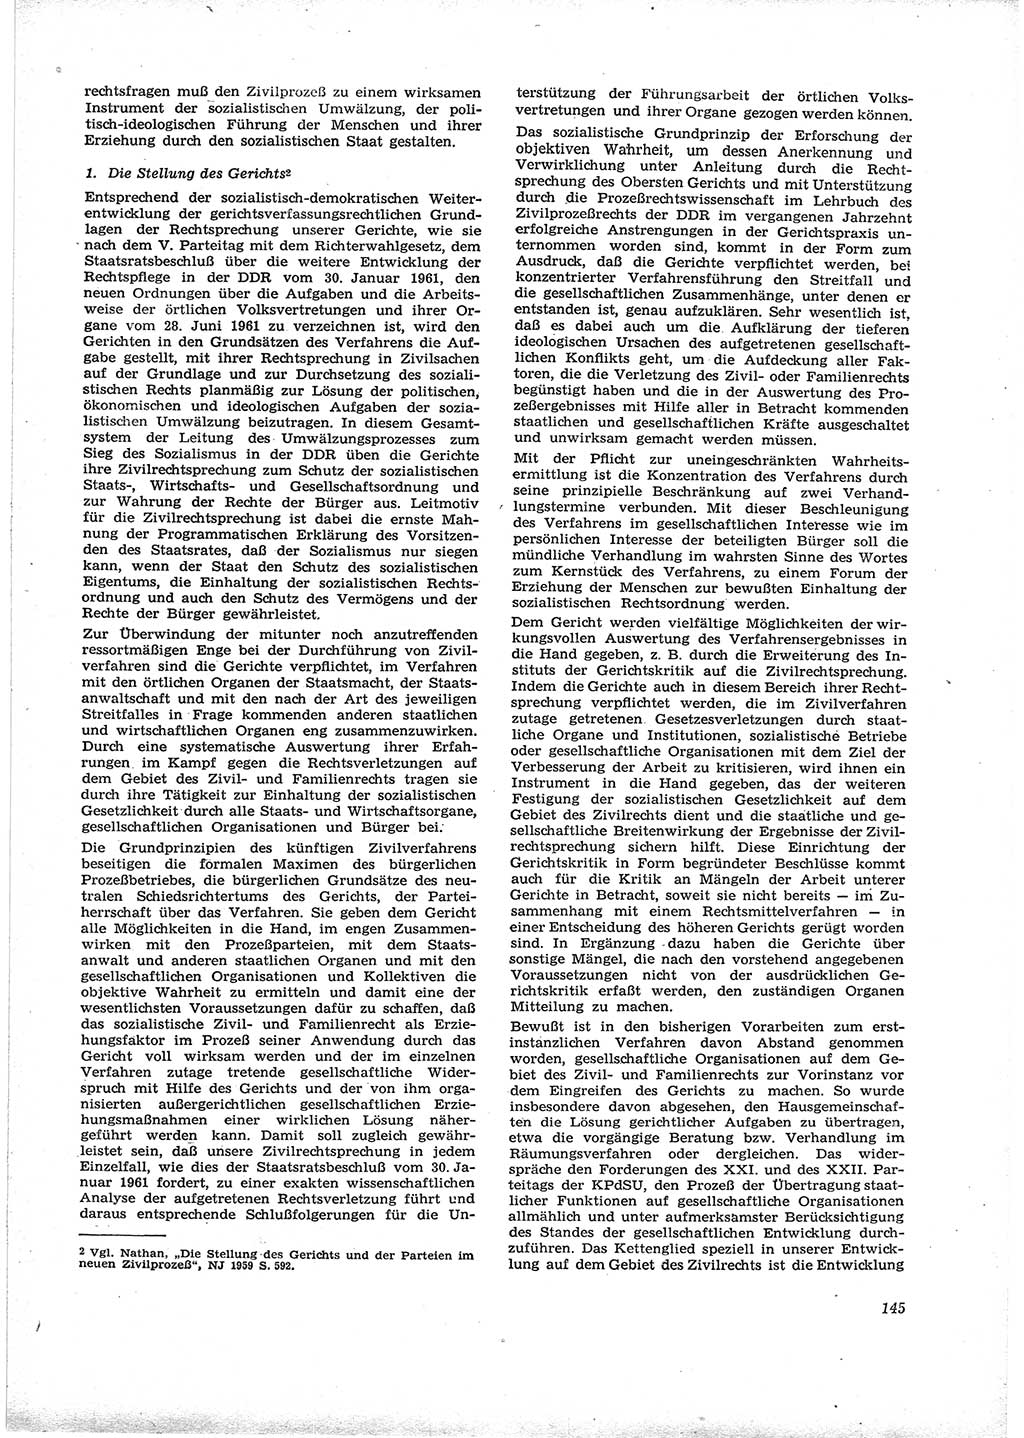 Neue Justiz (NJ), Zeitschrift für Recht und Rechtswissenschaft [Deutsche Demokratische Republik (DDR)], 16. Jahrgang 1962, Seite 145 (NJ DDR 1962, S. 145)